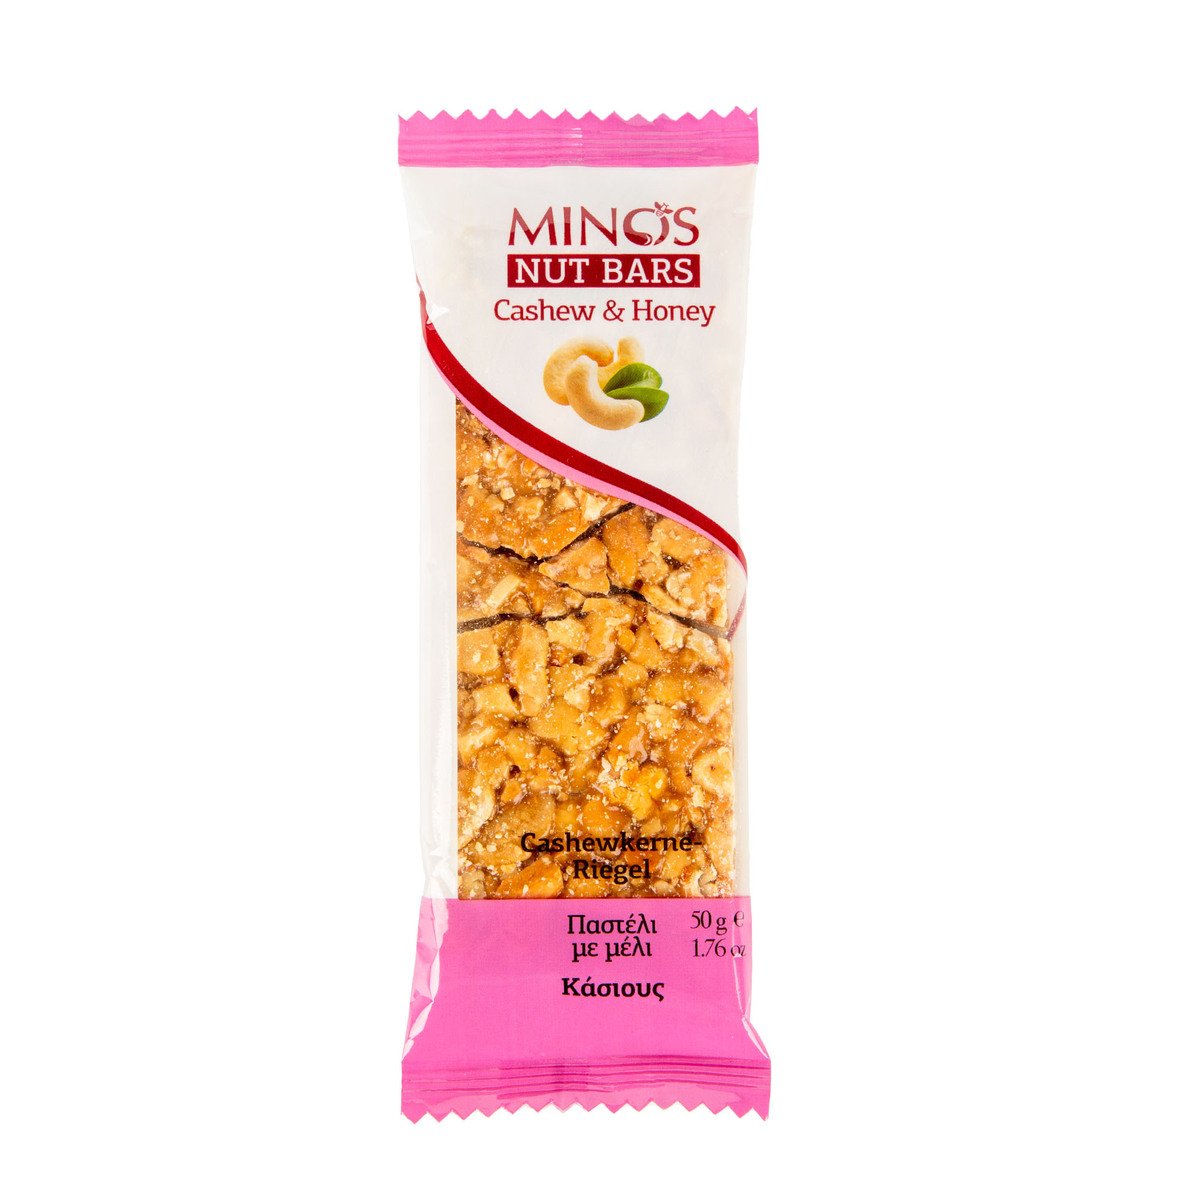 Minos Cashew & Honey Nut Bar 50 g